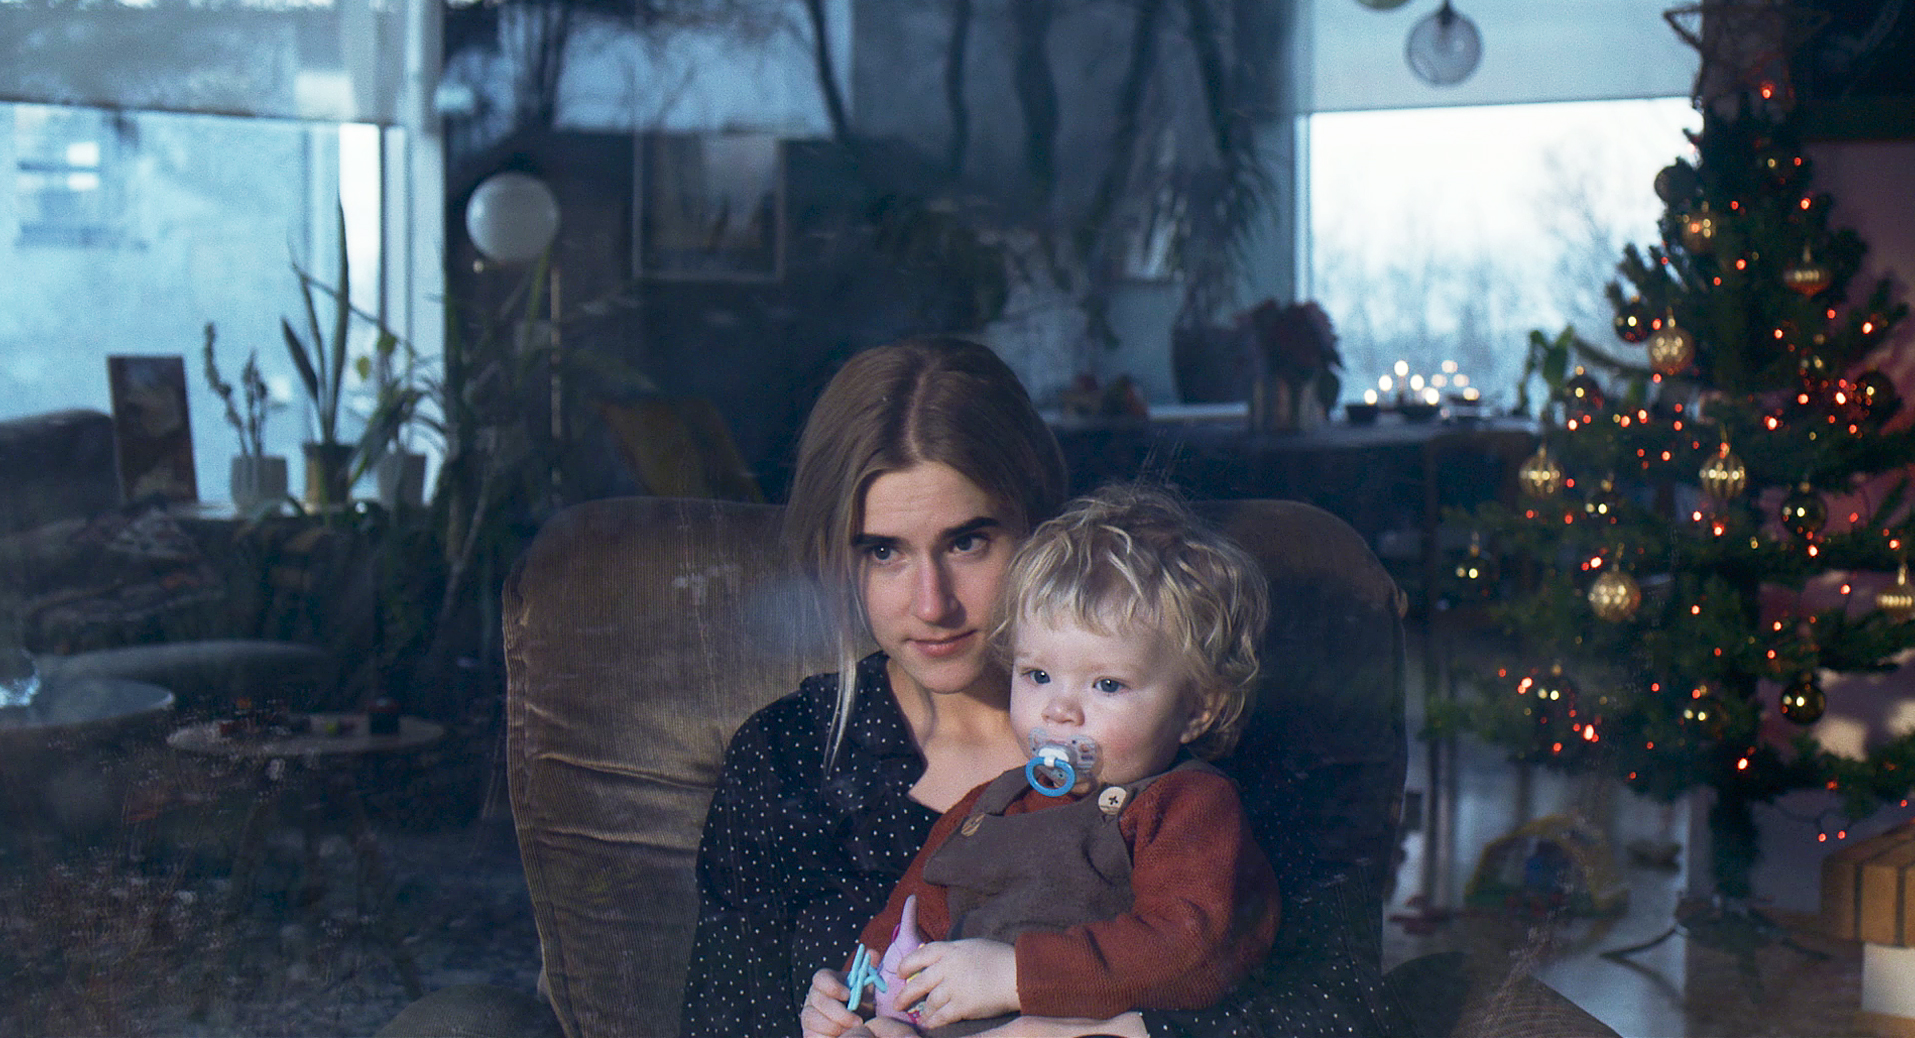 Echo: Auf dem Bild sitzt eine junge Frau in einem Ledersessel. Auf ihrem Schoß ist ein blondes Kind mit einem Schnuller. Im Hintergrund sieht man Fenster, Pflanzen und rechts einen geschmückten Weihnachtsbaum